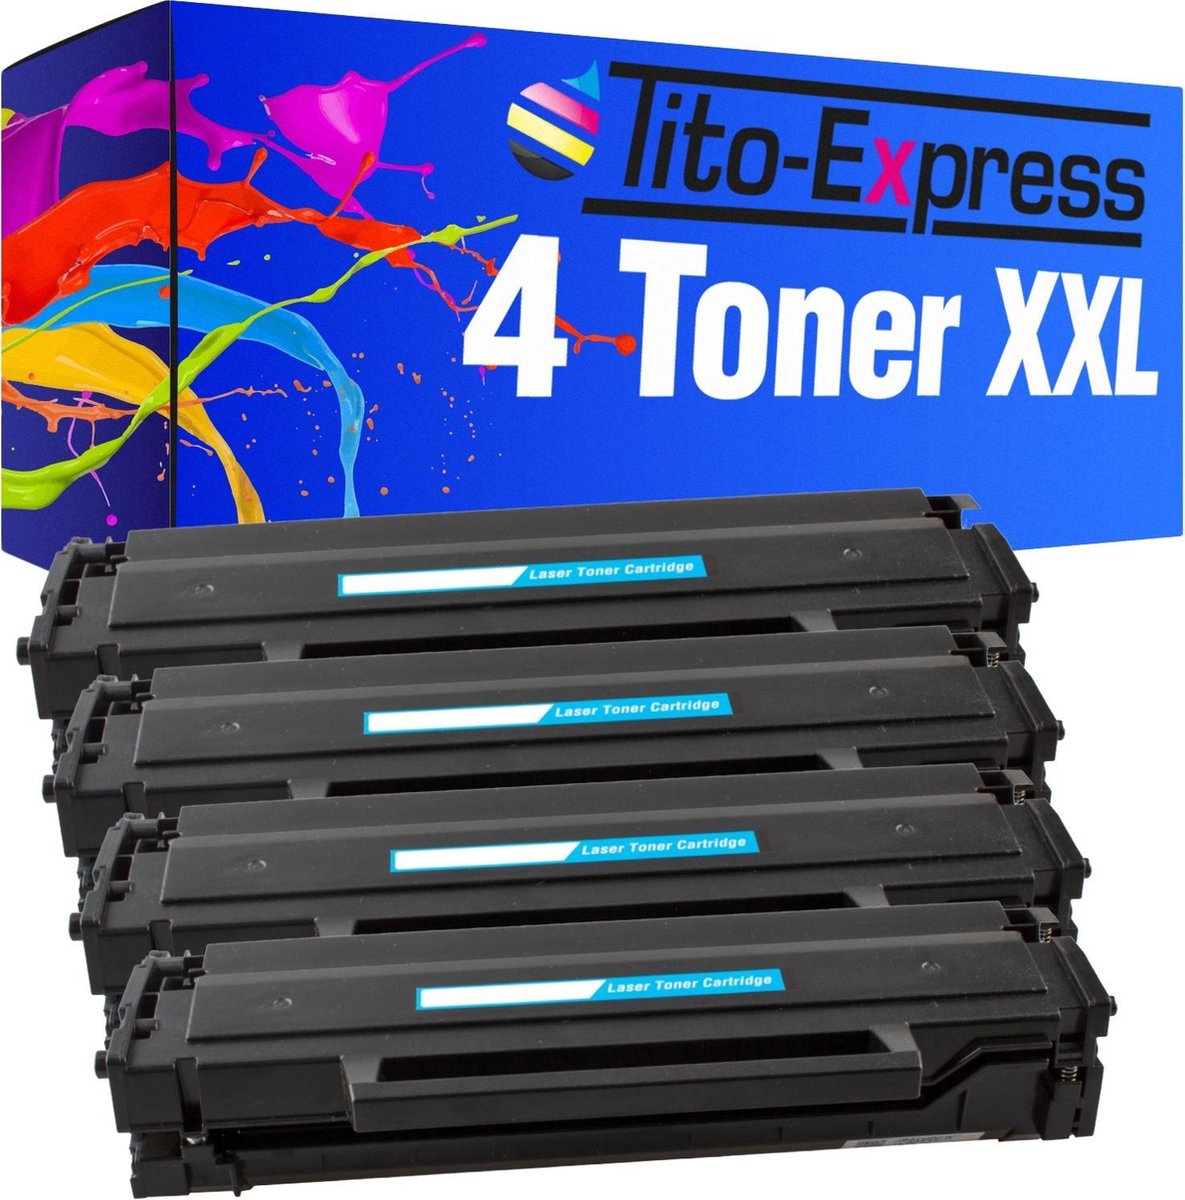 PlatinumSerie 4x toner cartridge alternatief voor Samsung MLT-D111S Black - Tito-EXpress